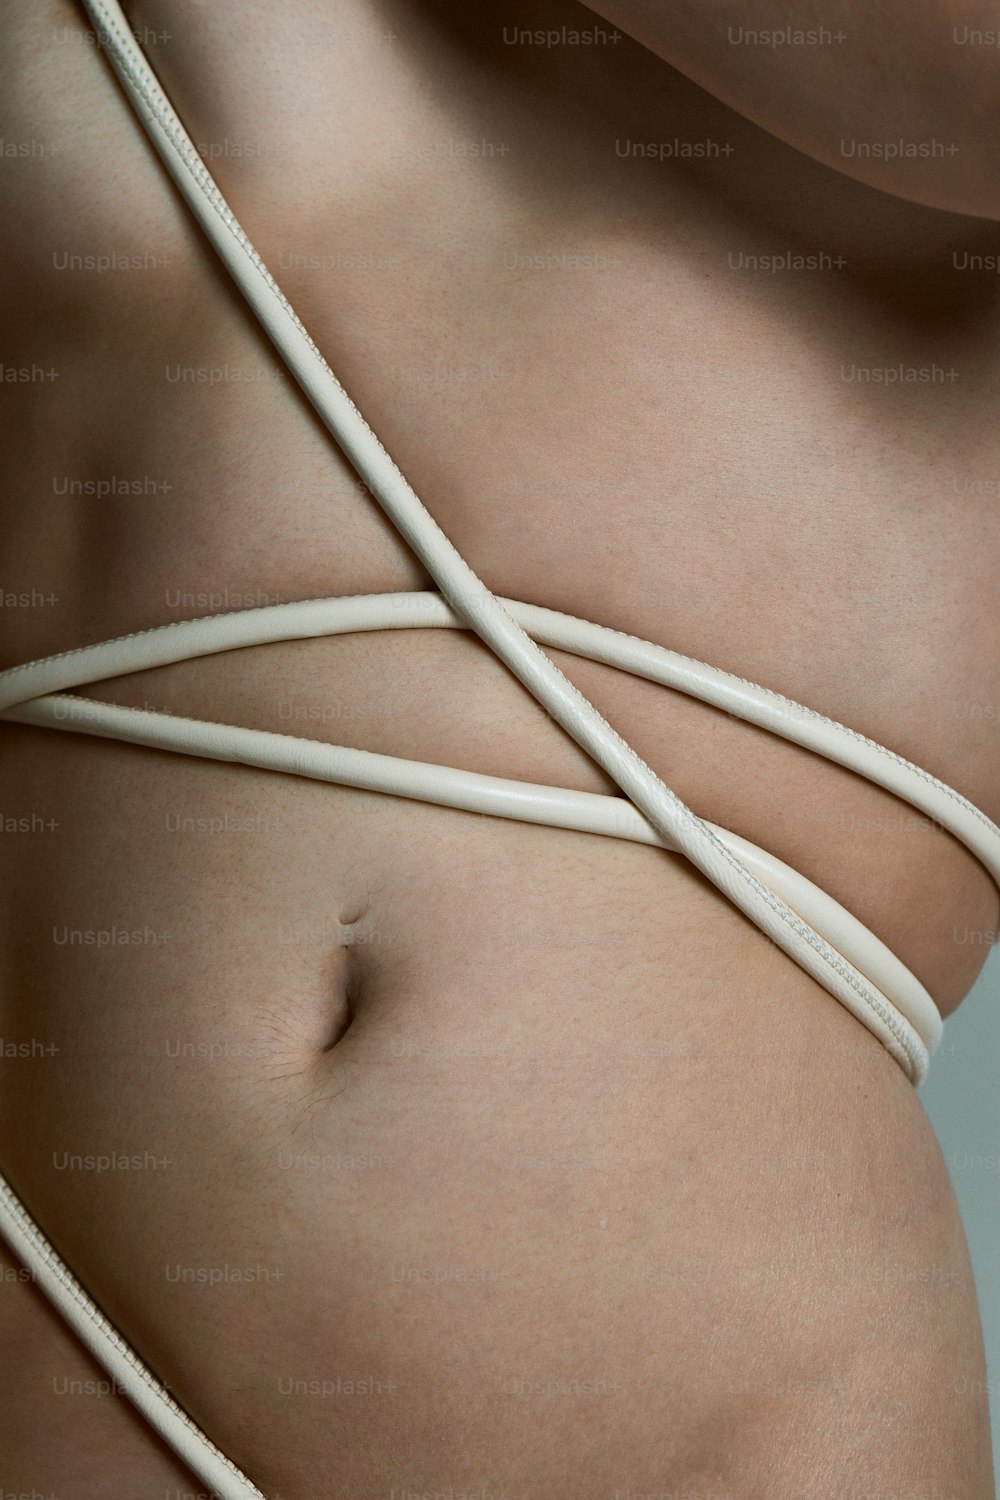 Un primer plano del estómago de una mujer con una cuerda envuelta alrededor de él